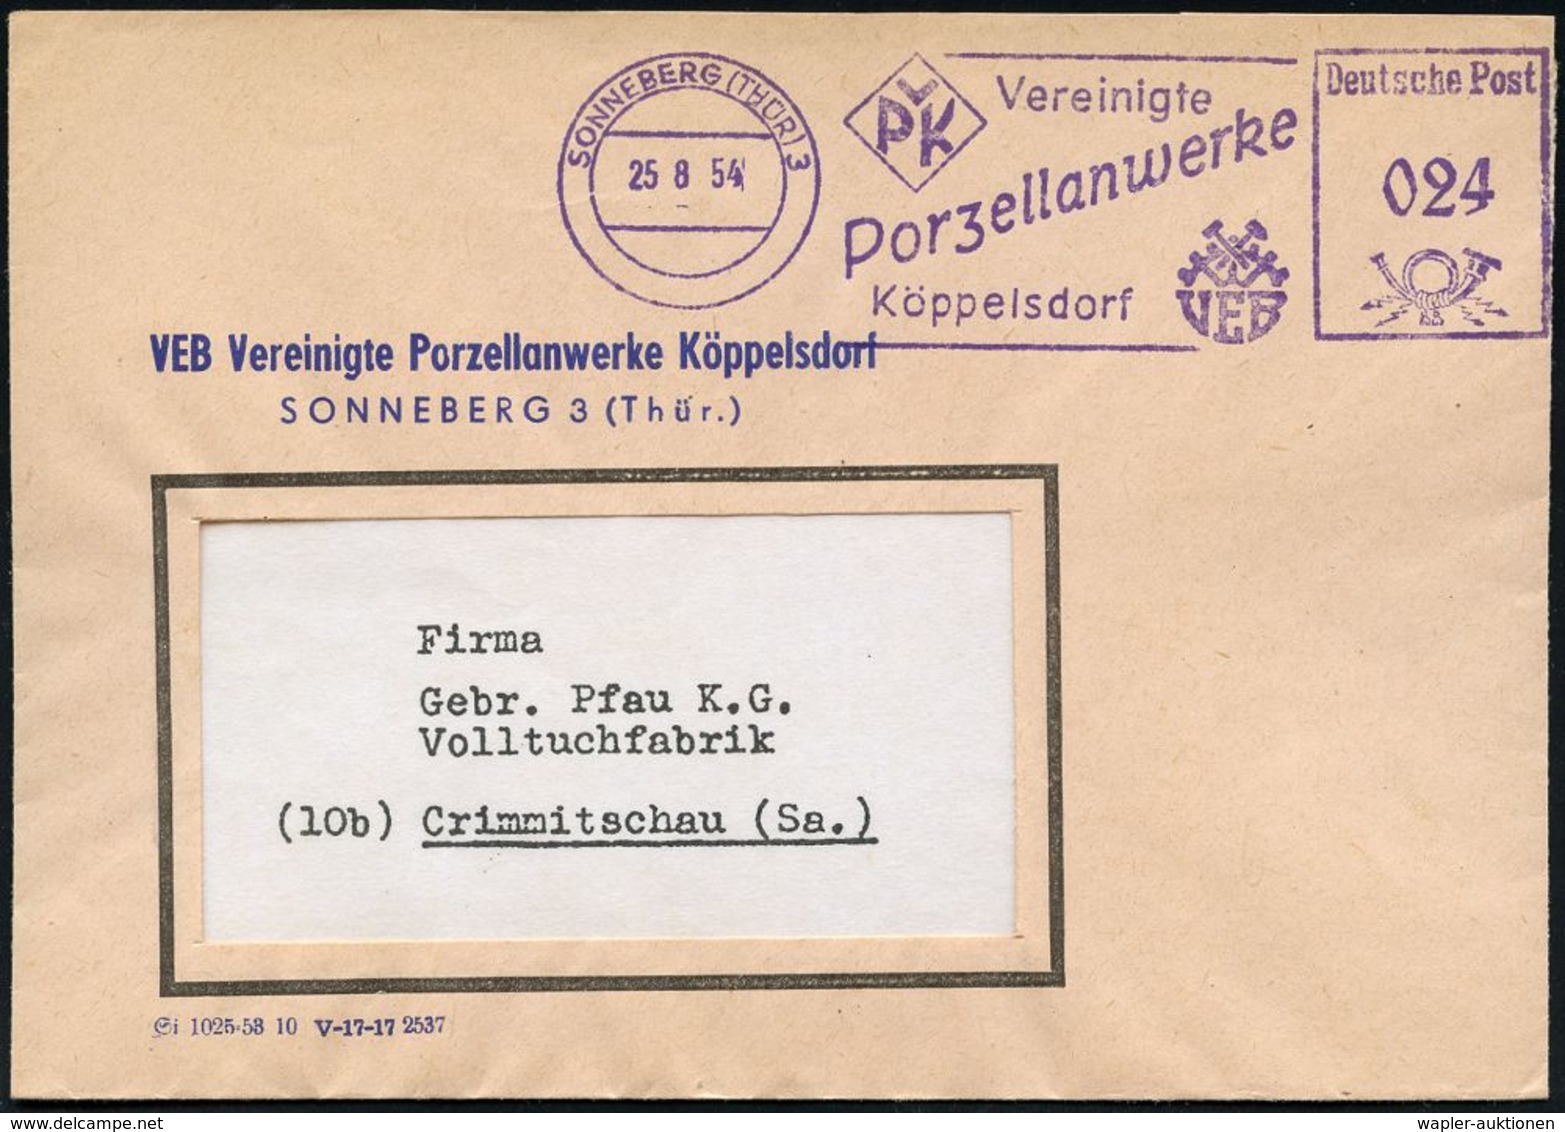 KERAMIK / PORZELLAN / MANUFAKTUREN : SONNEBERG (THÜR) 3/ VPK Vereinigte/ Porzellanwerke/ Köppelsdorf 1954 (25.8.) L I L  - Porcellana